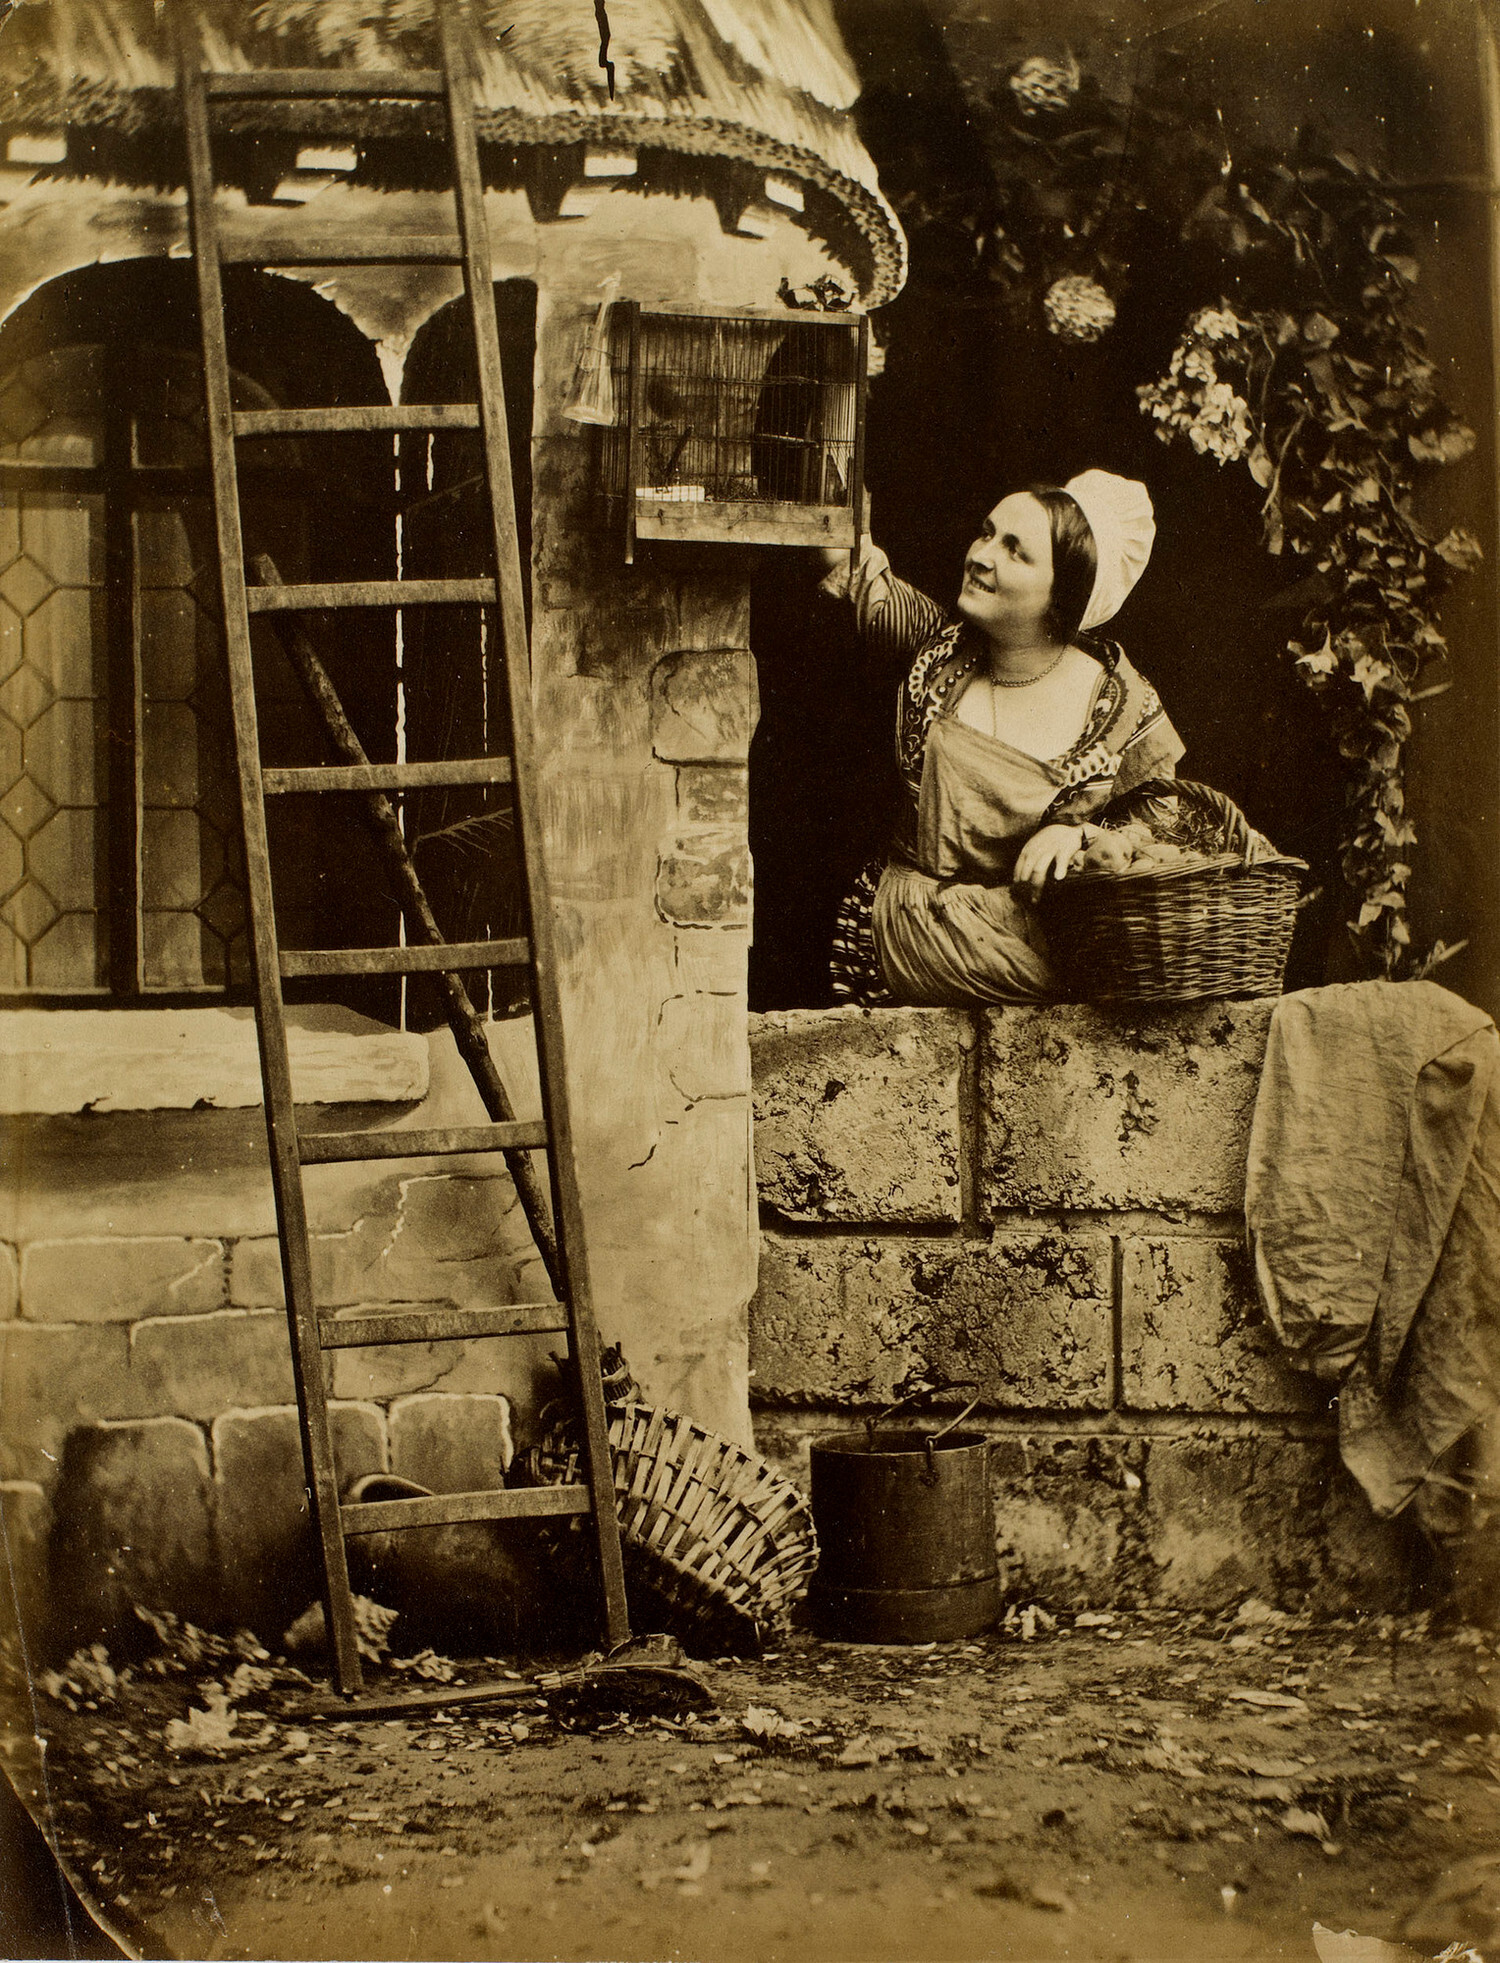 Женщина с корзиной возле птичьей клетки. Копия с оригинала 1854 года из ателье Мулен